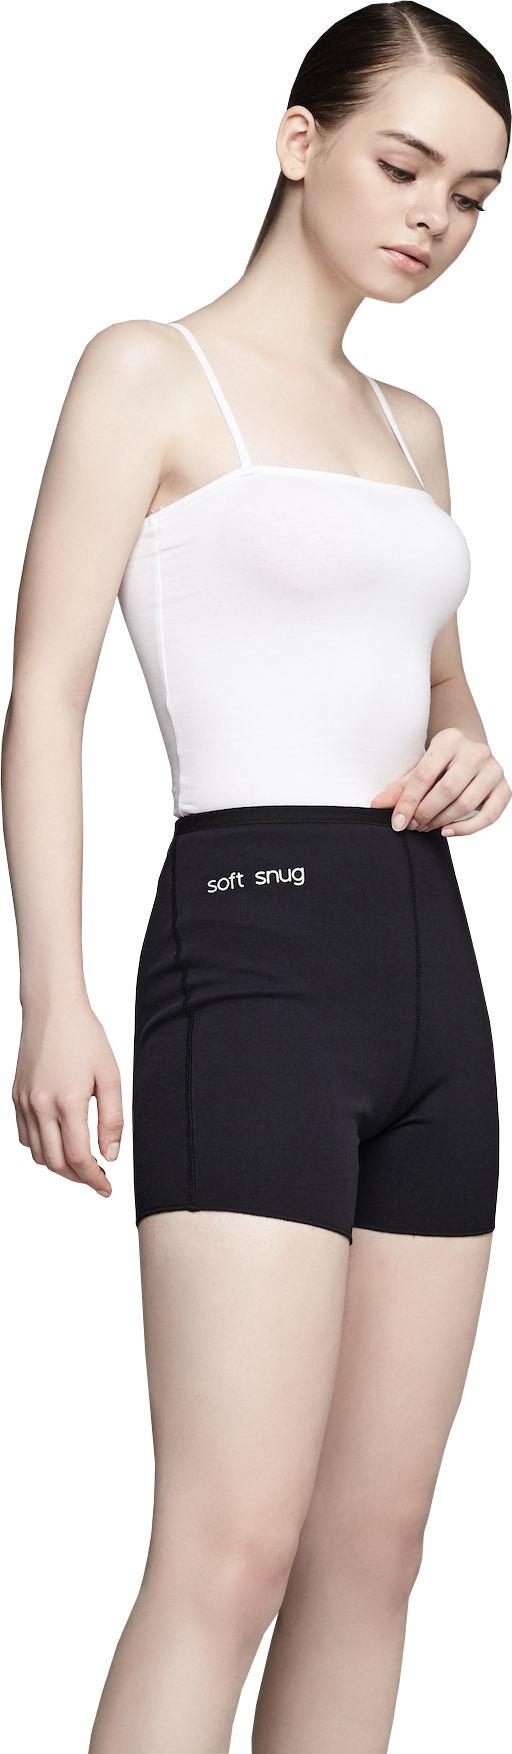 Shop Soft Snug Official online